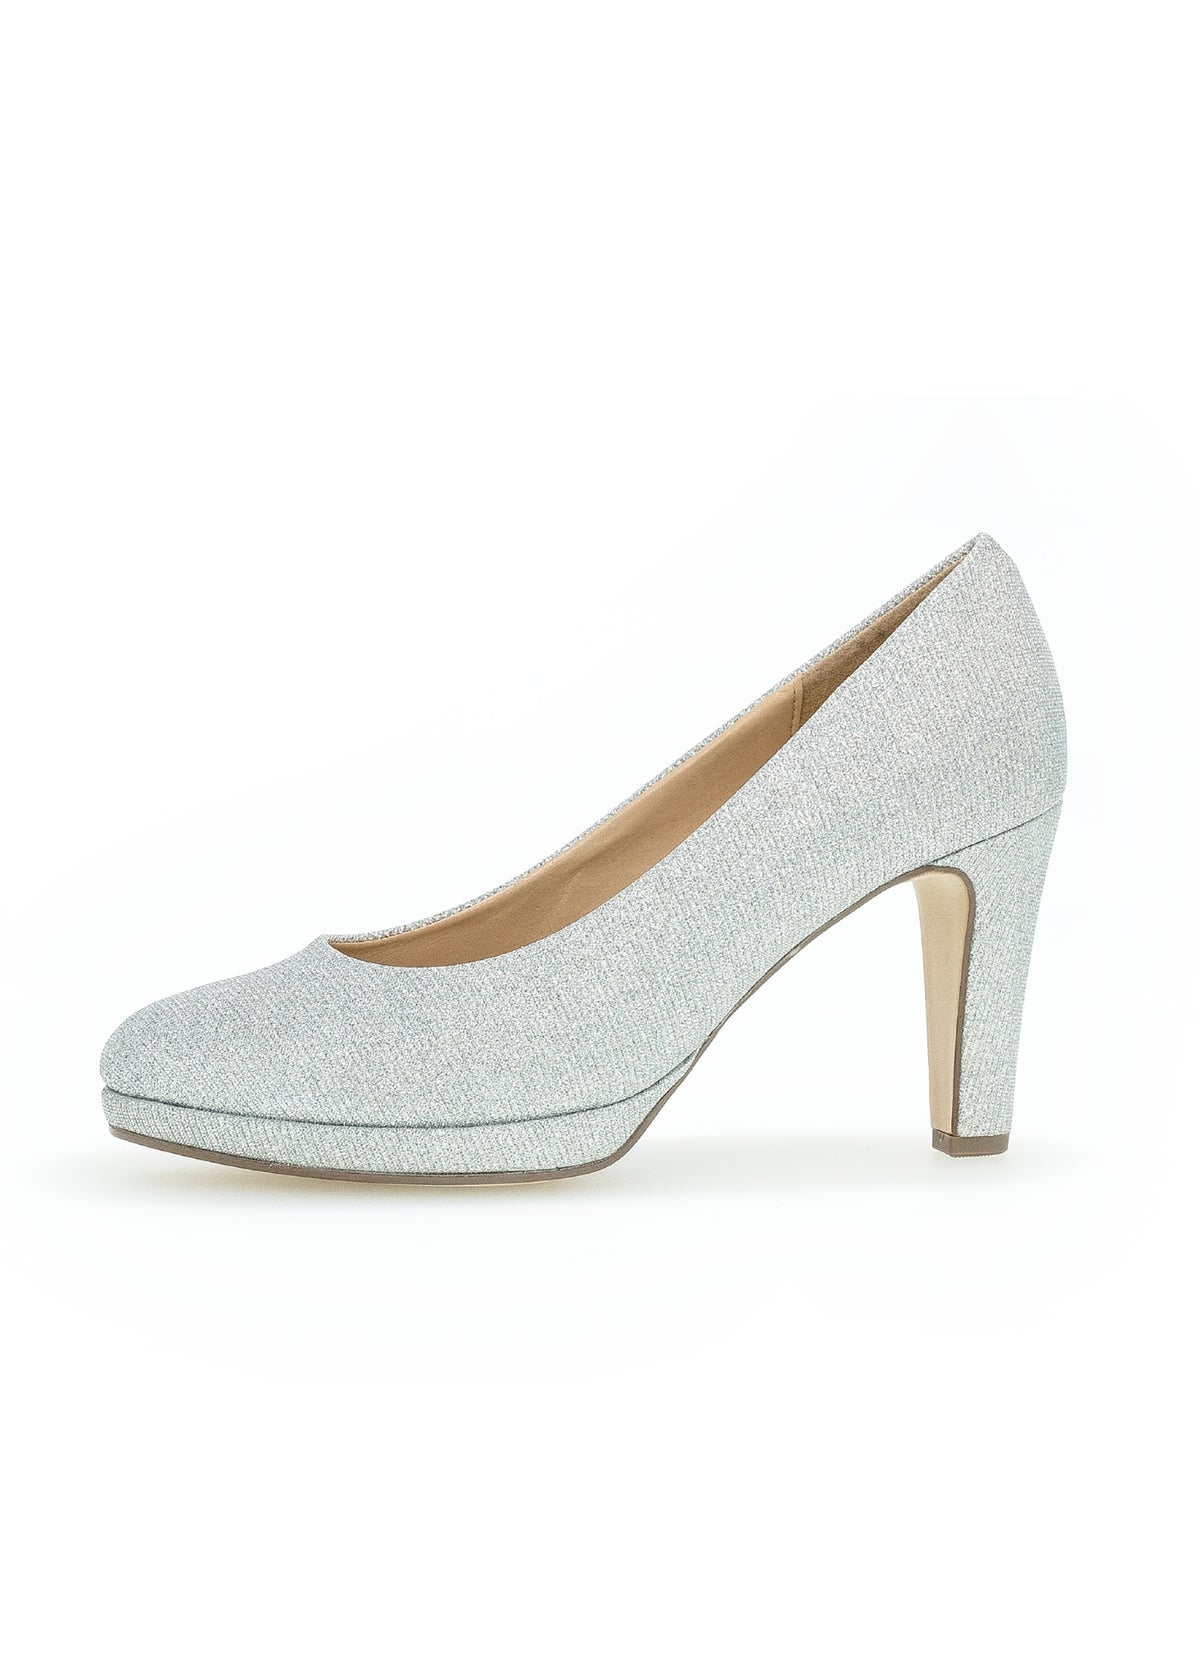 High heels - silver glitter